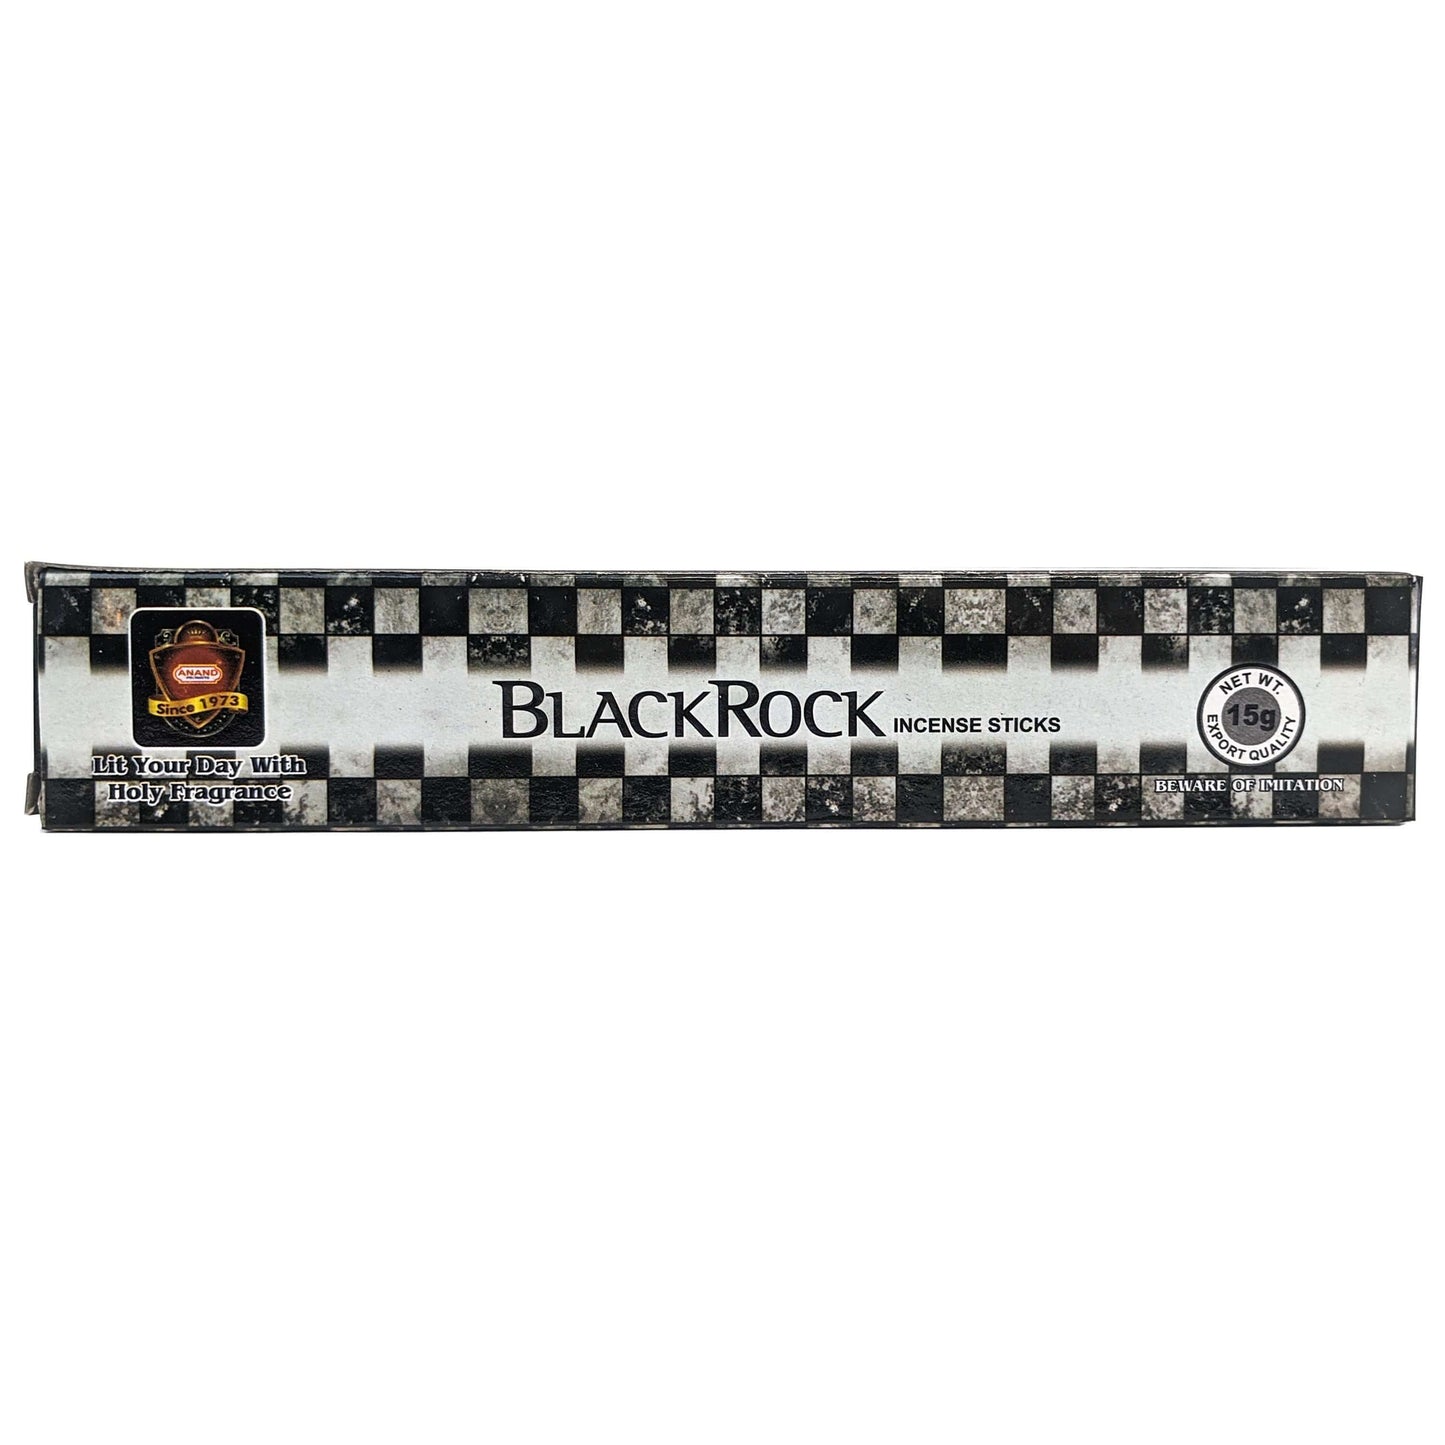 Anand Black Rock Incense Sticks, 15g Pack